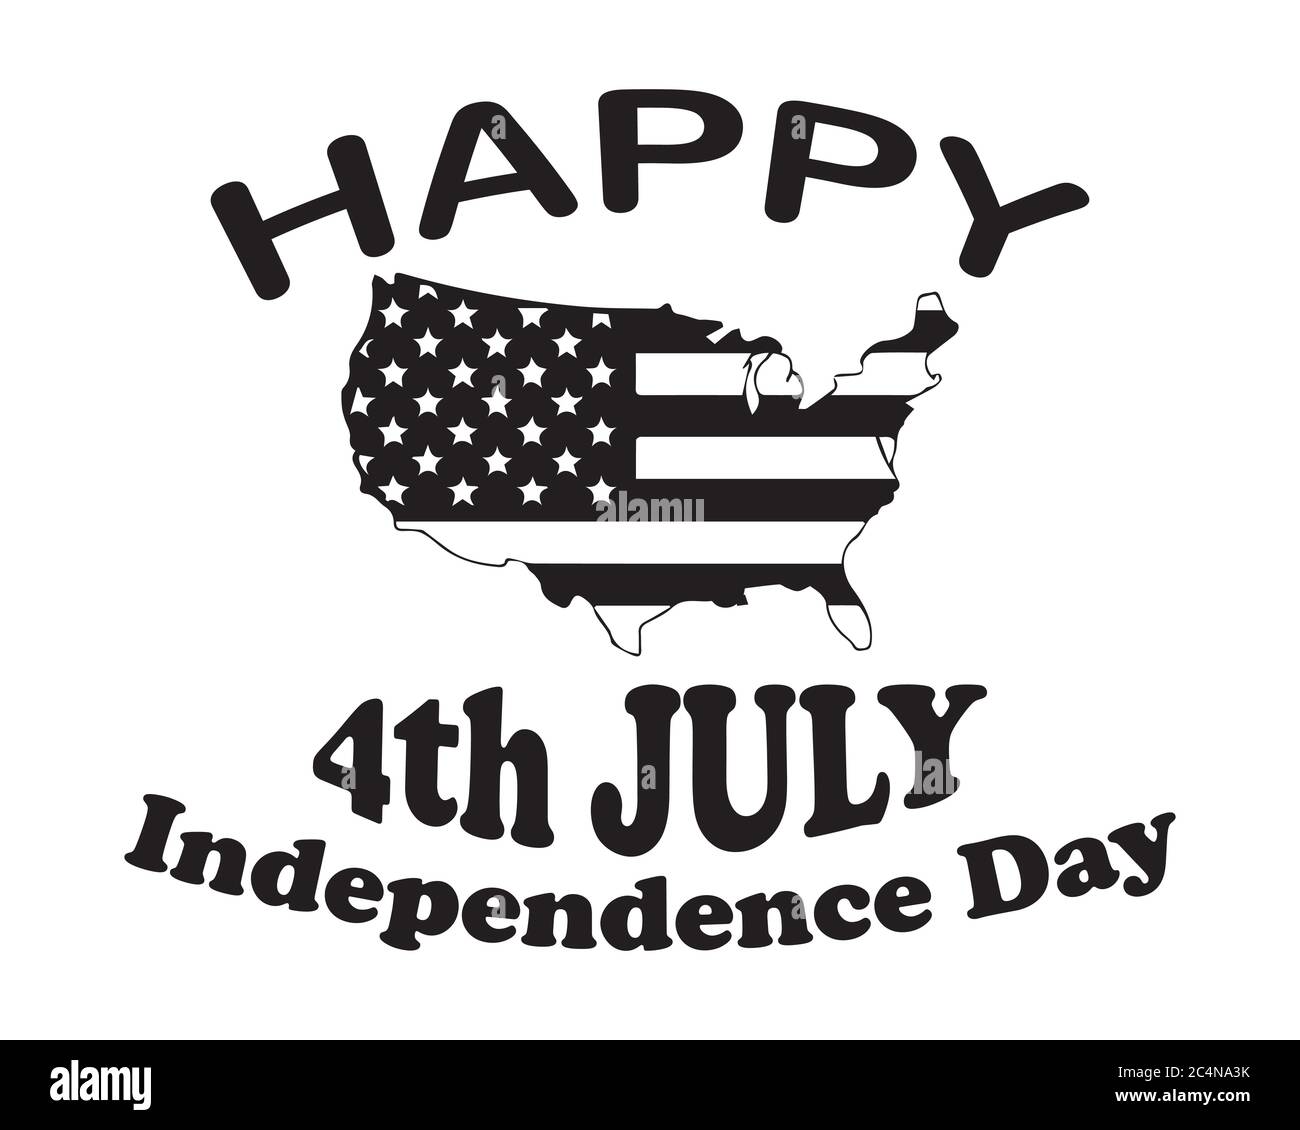 Happy 4. Juli Independence Day Text und amerikanische USA US-Länderkarte mit Star Spangled Banner National Flag verpackt. Schwarzes Poster Illustration Isolat Stock Vektor